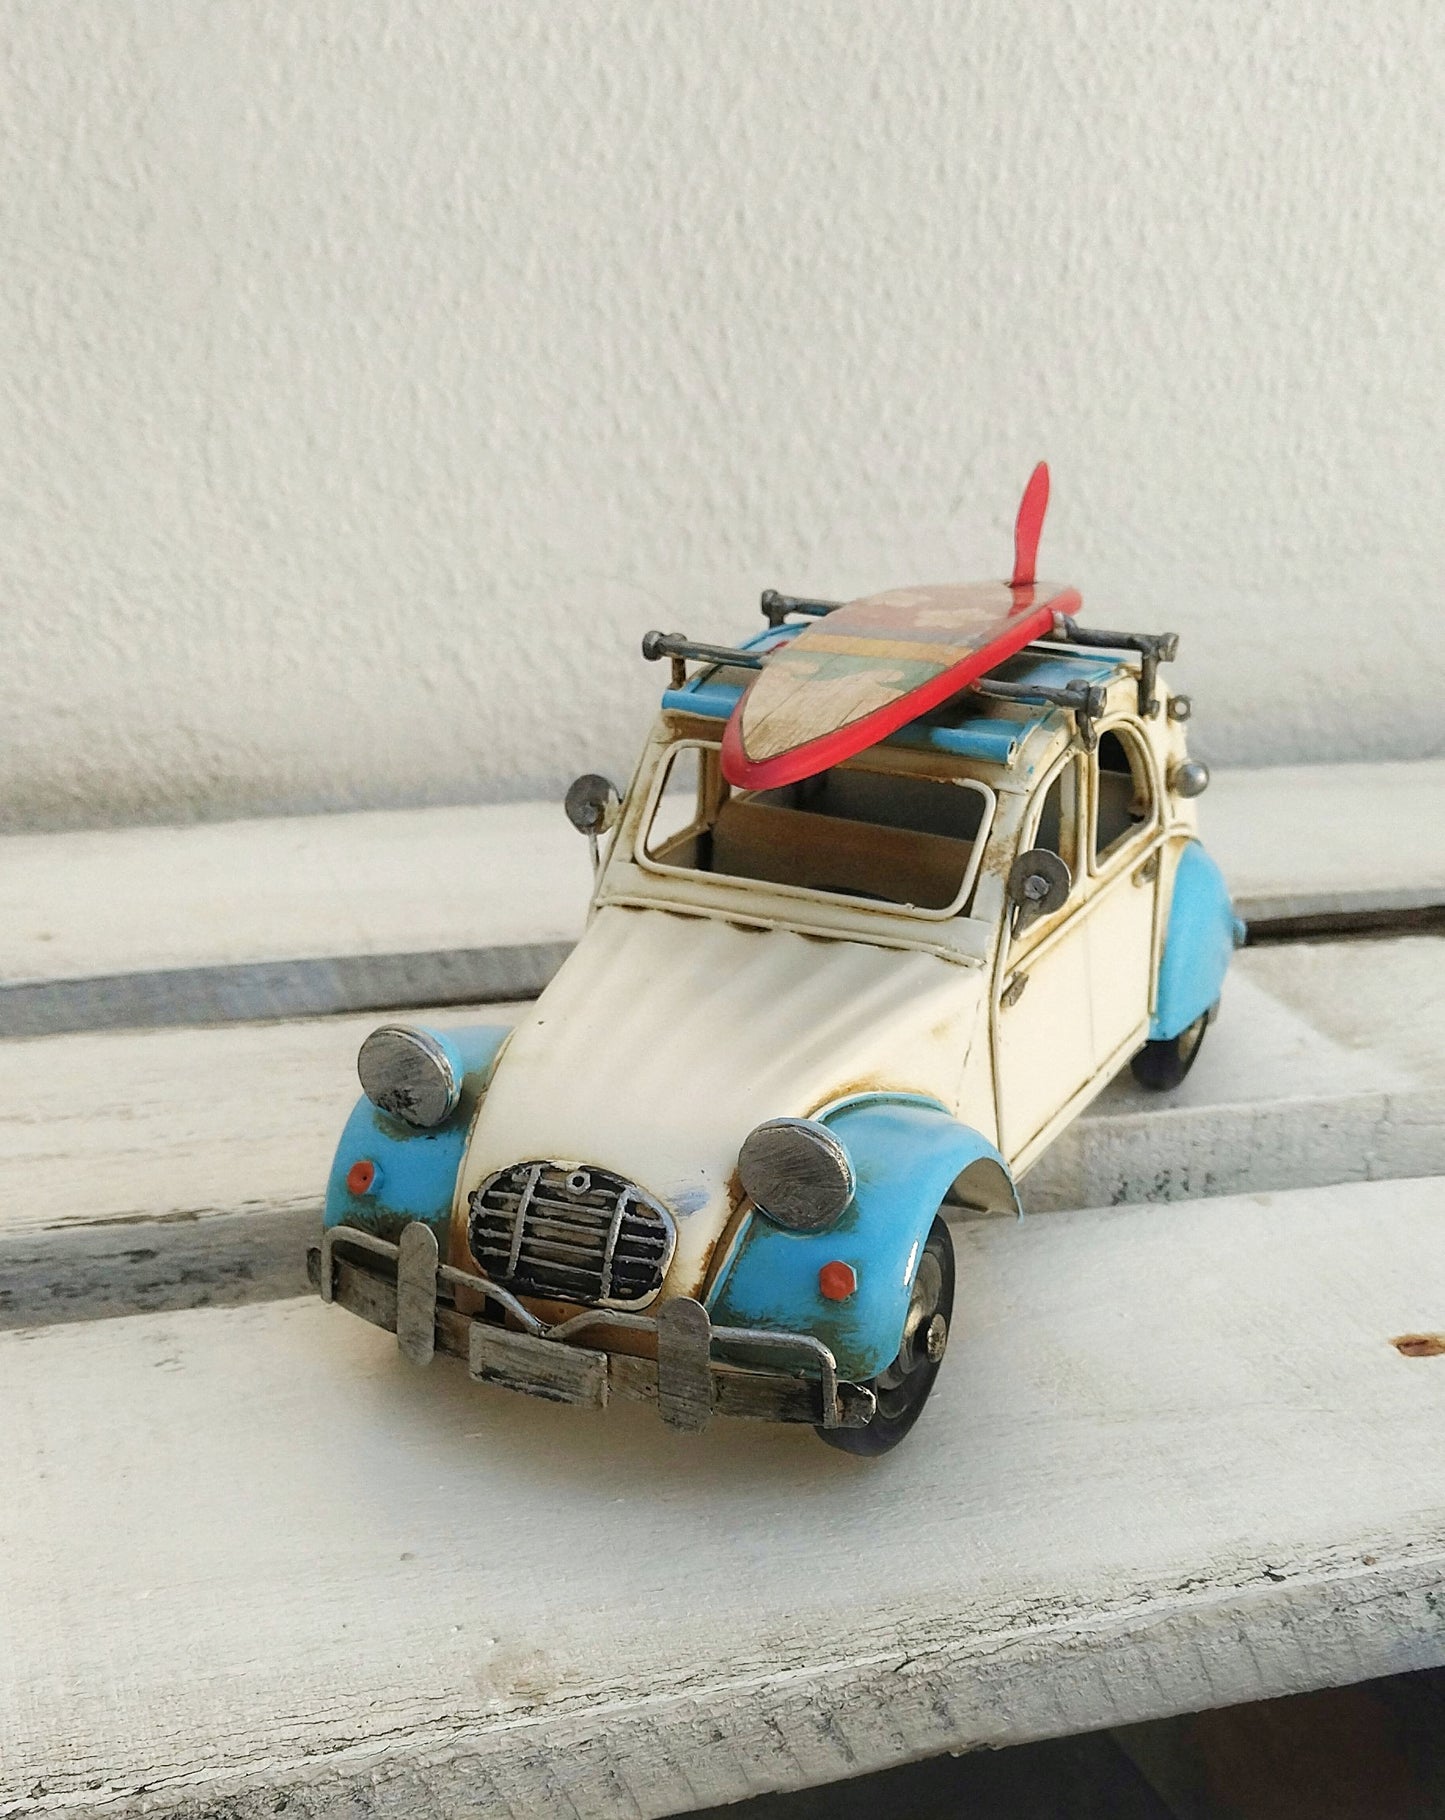 Retro Citroen 2 CV Metal Car, Vintage Beetle Car With Surf Board